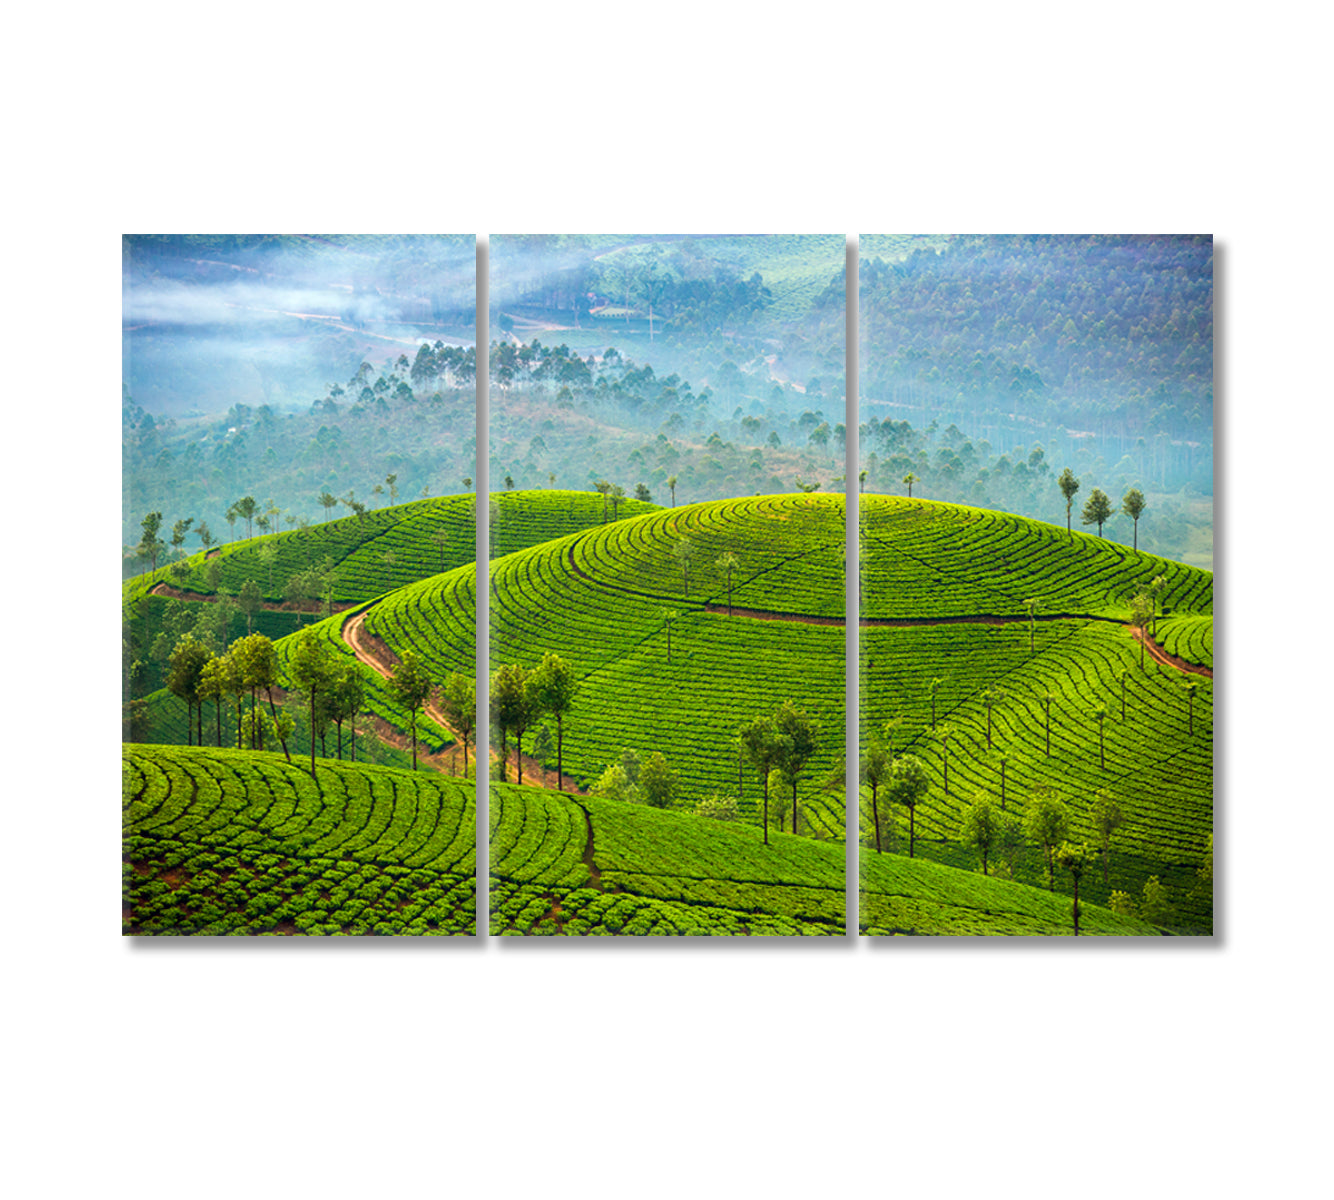 Tea Plantations in Munnar India Canvas Print-Canvas Print-CetArt-3 Panels-36x24 inches-CetArt